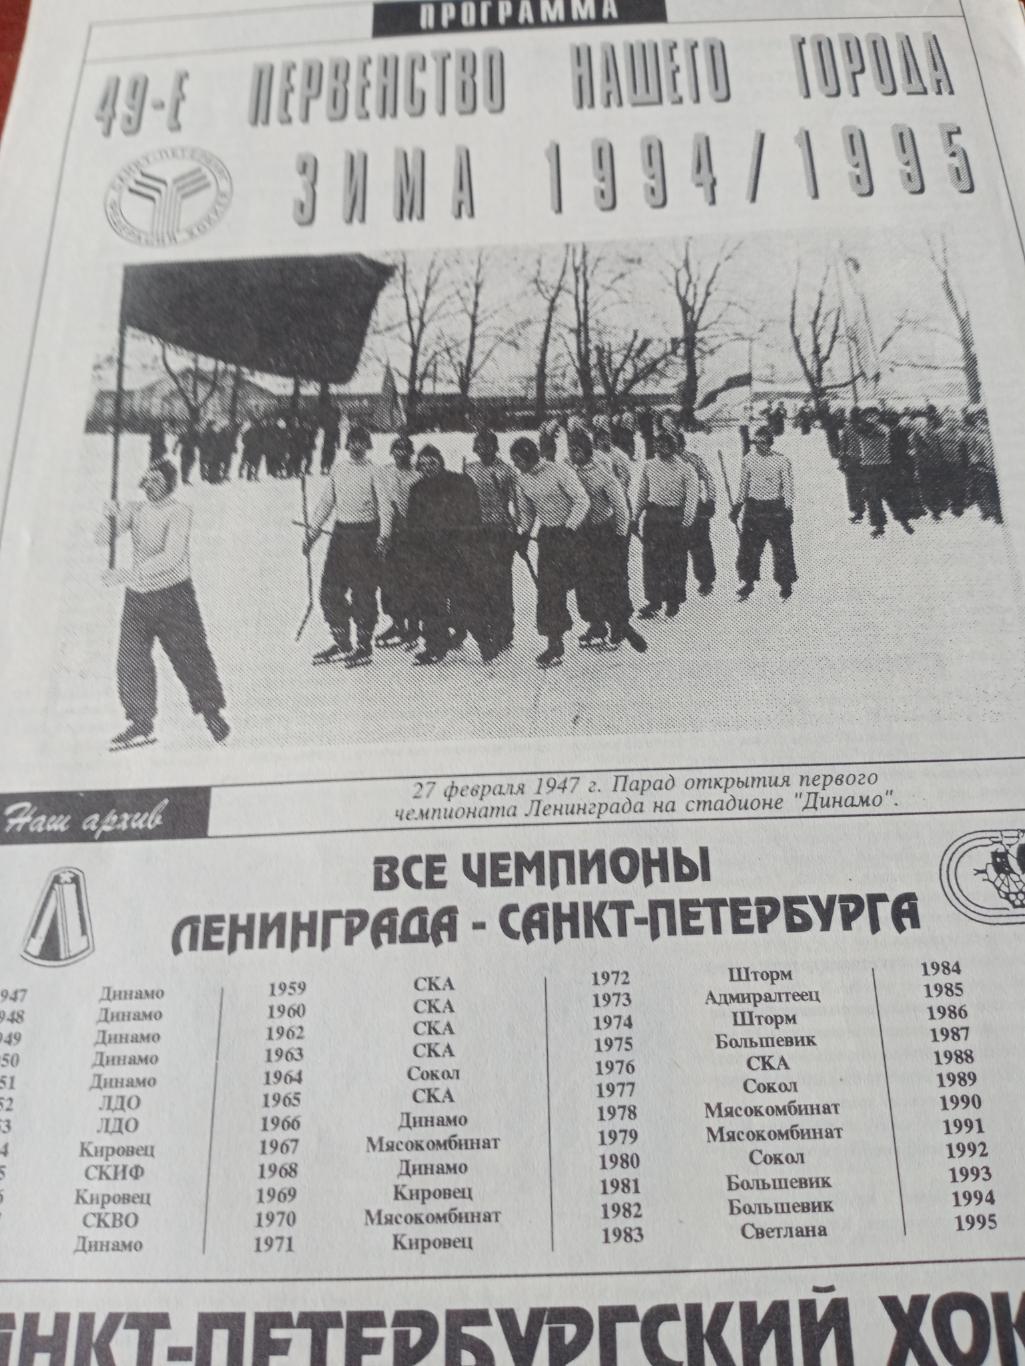 Санкт-Петербургский хоккей. 1994/1995 гг